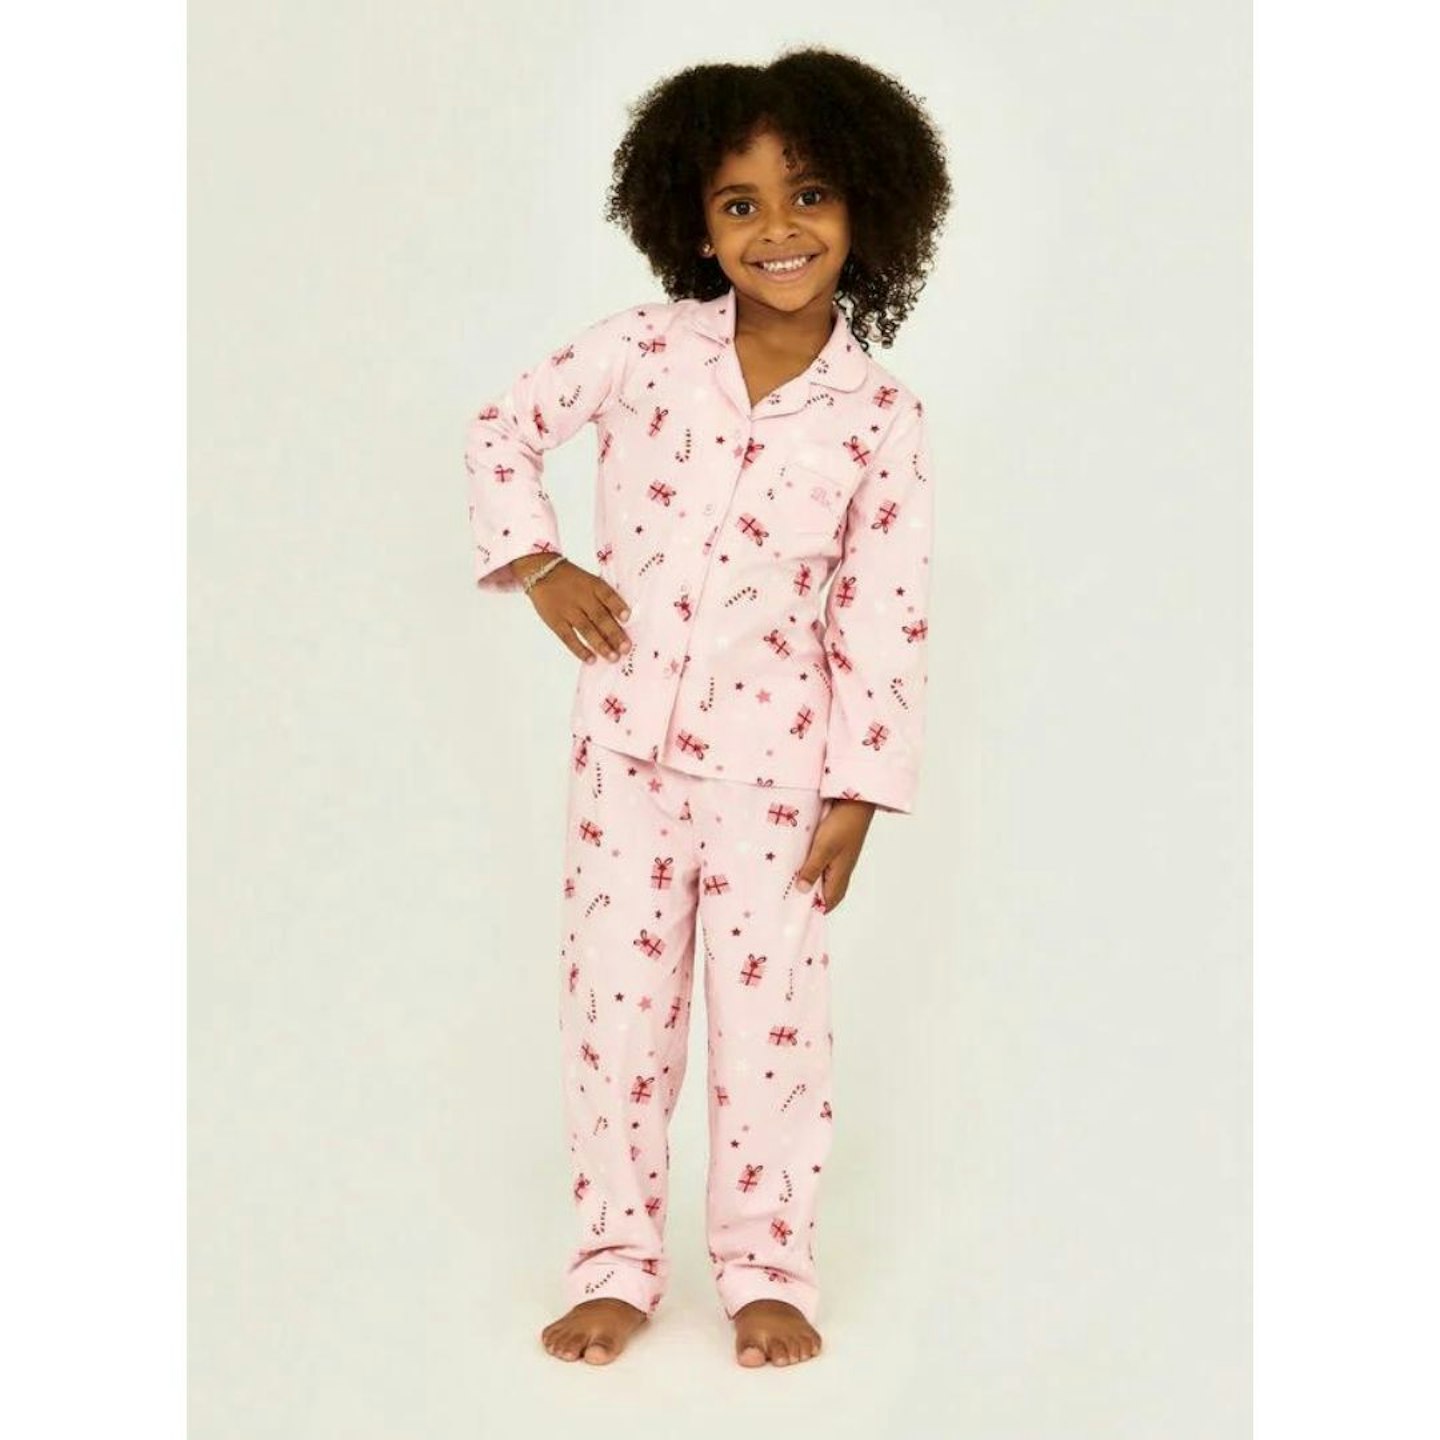 Family Christmas Pyjamas: Kids fleece present pyjamas in a bag - Pink Mix